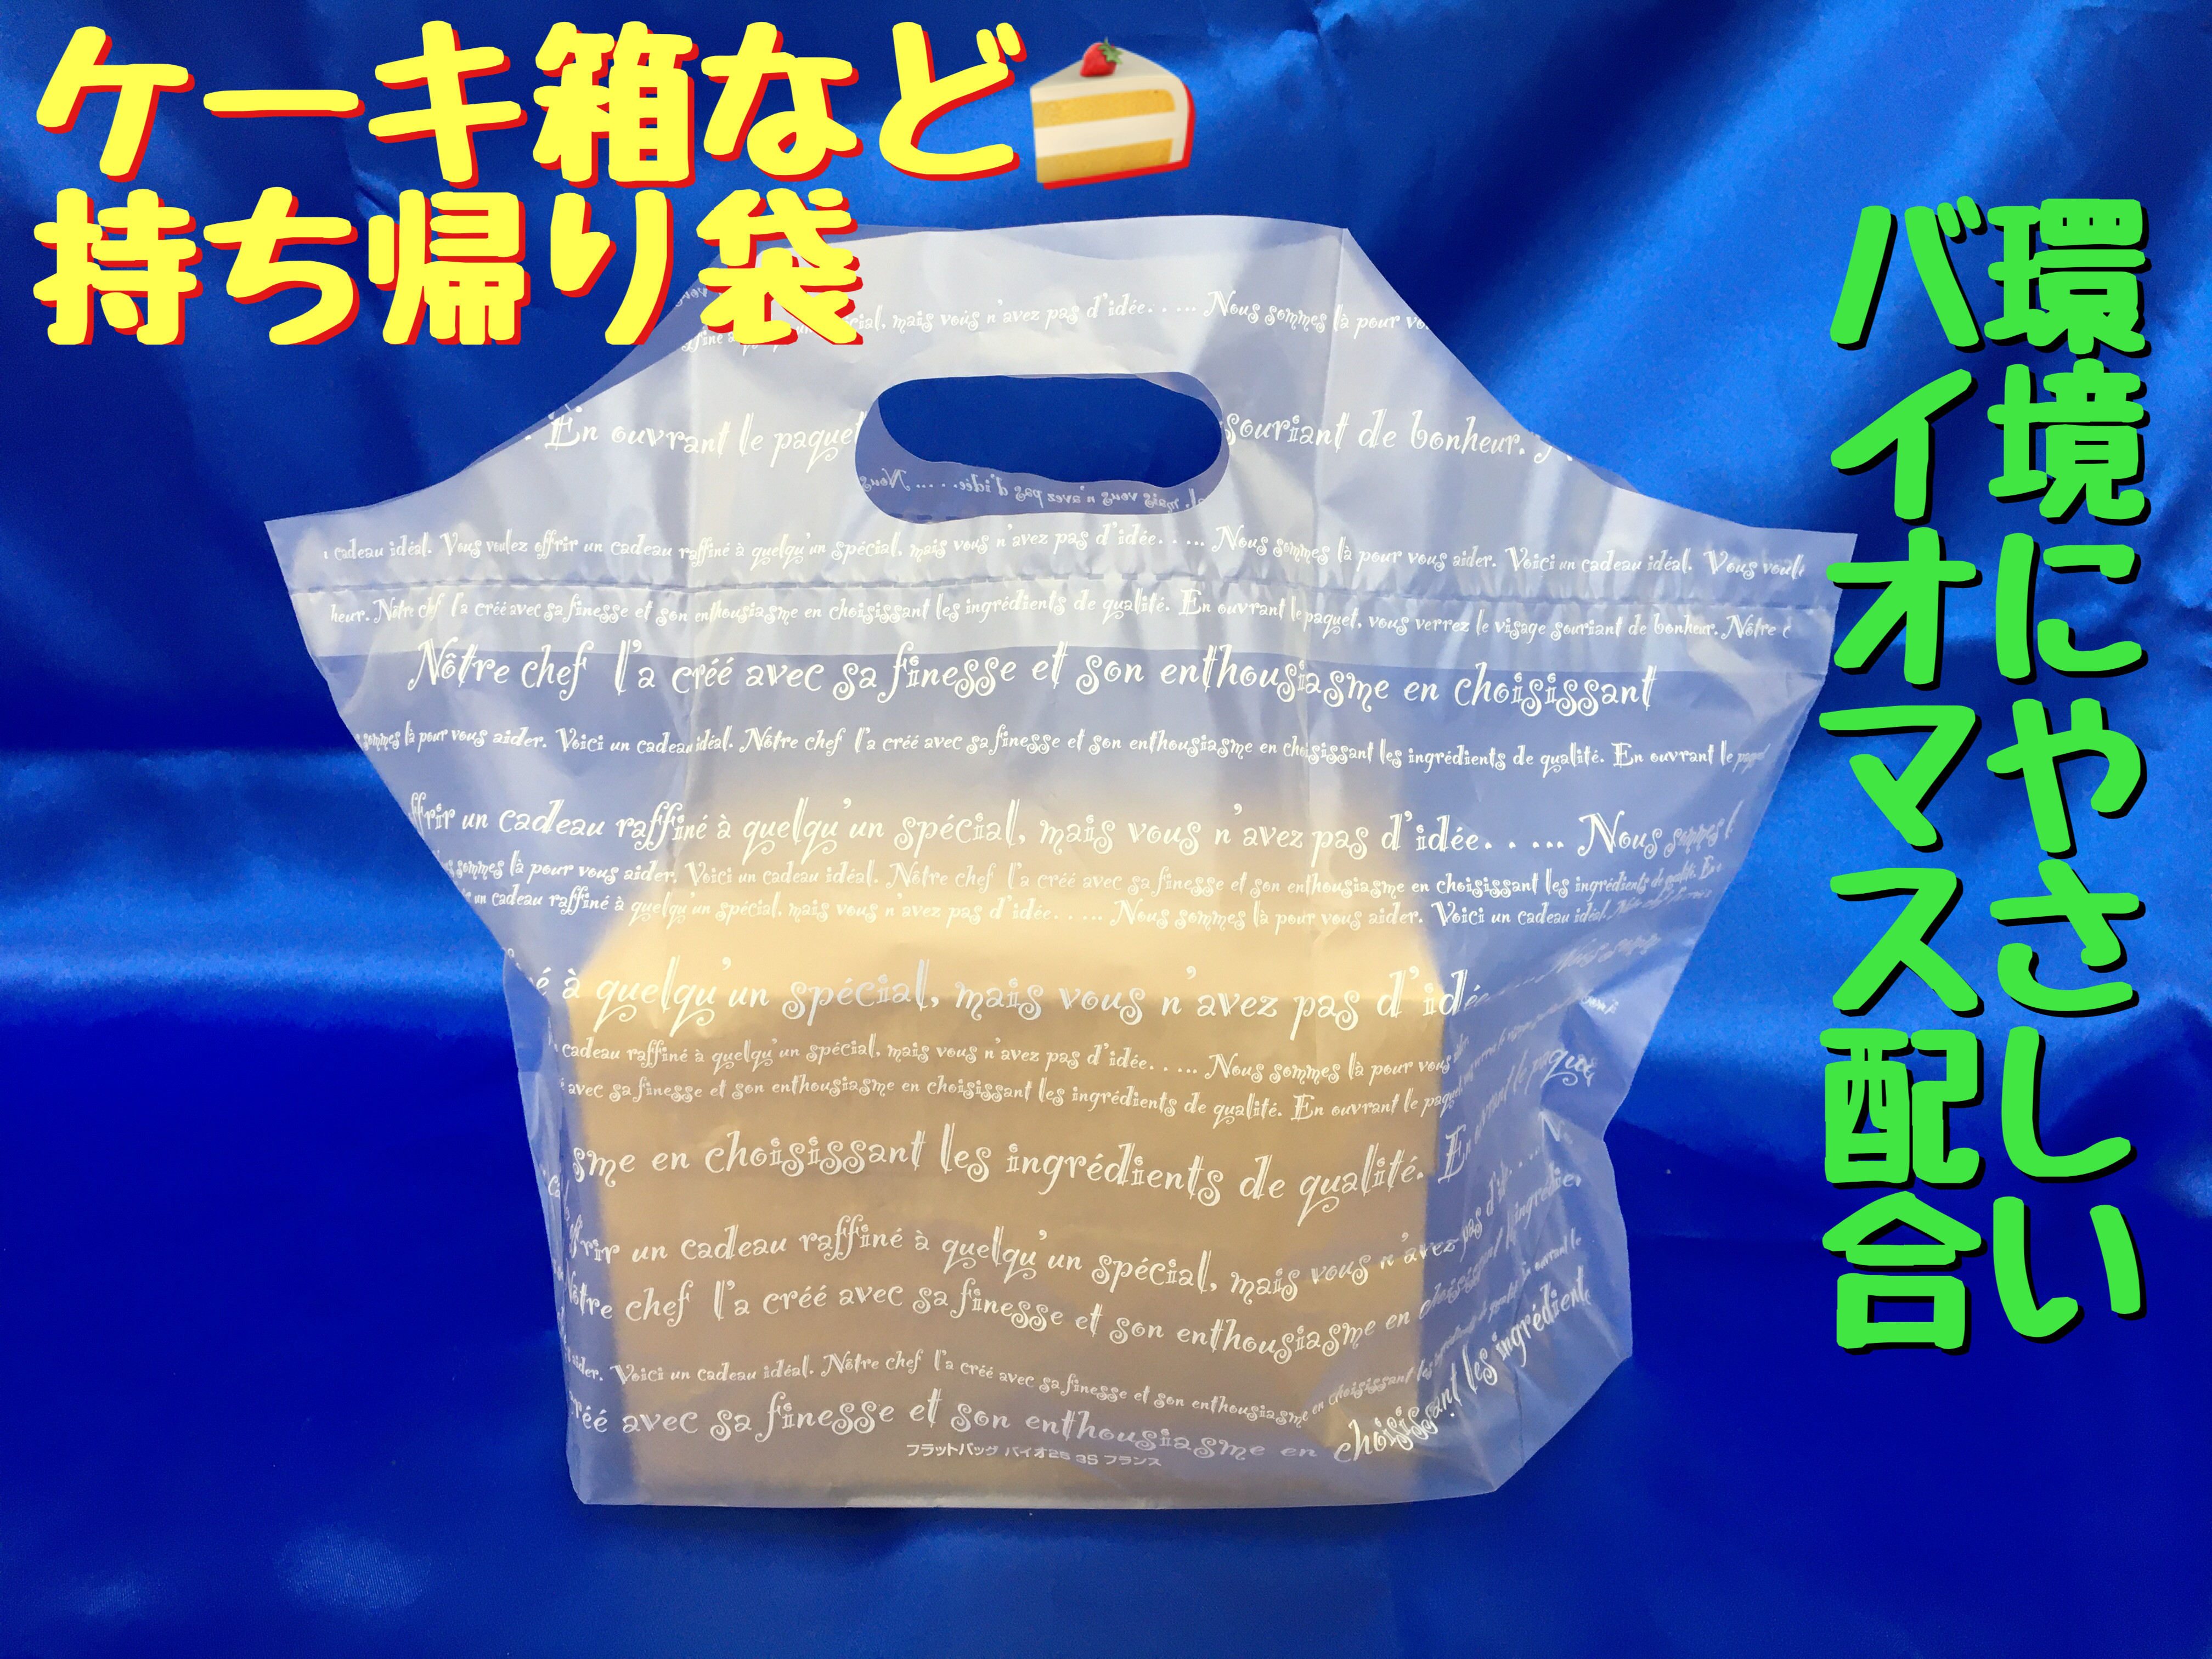 バイオマスプラスチック配合　有料レジ袋対象外の環境にやさしい　ケーキ箱などの持ち帰り袋　100枚/束で販売中